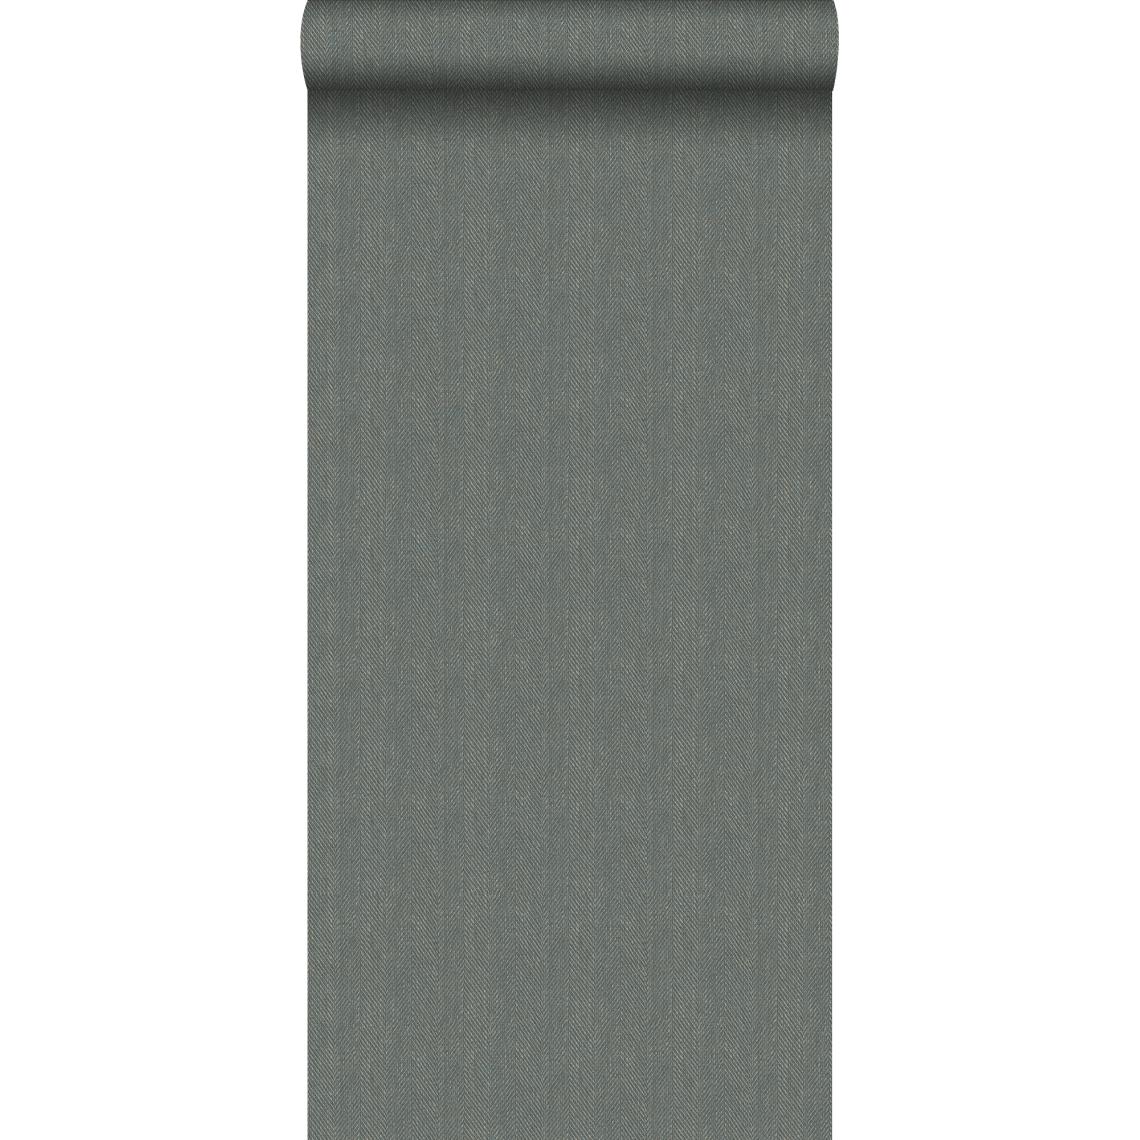 Origin - Origin papier peint tissage à chevrons gris vert - 347660 - 0.53 x 10.05 m - Papier peint